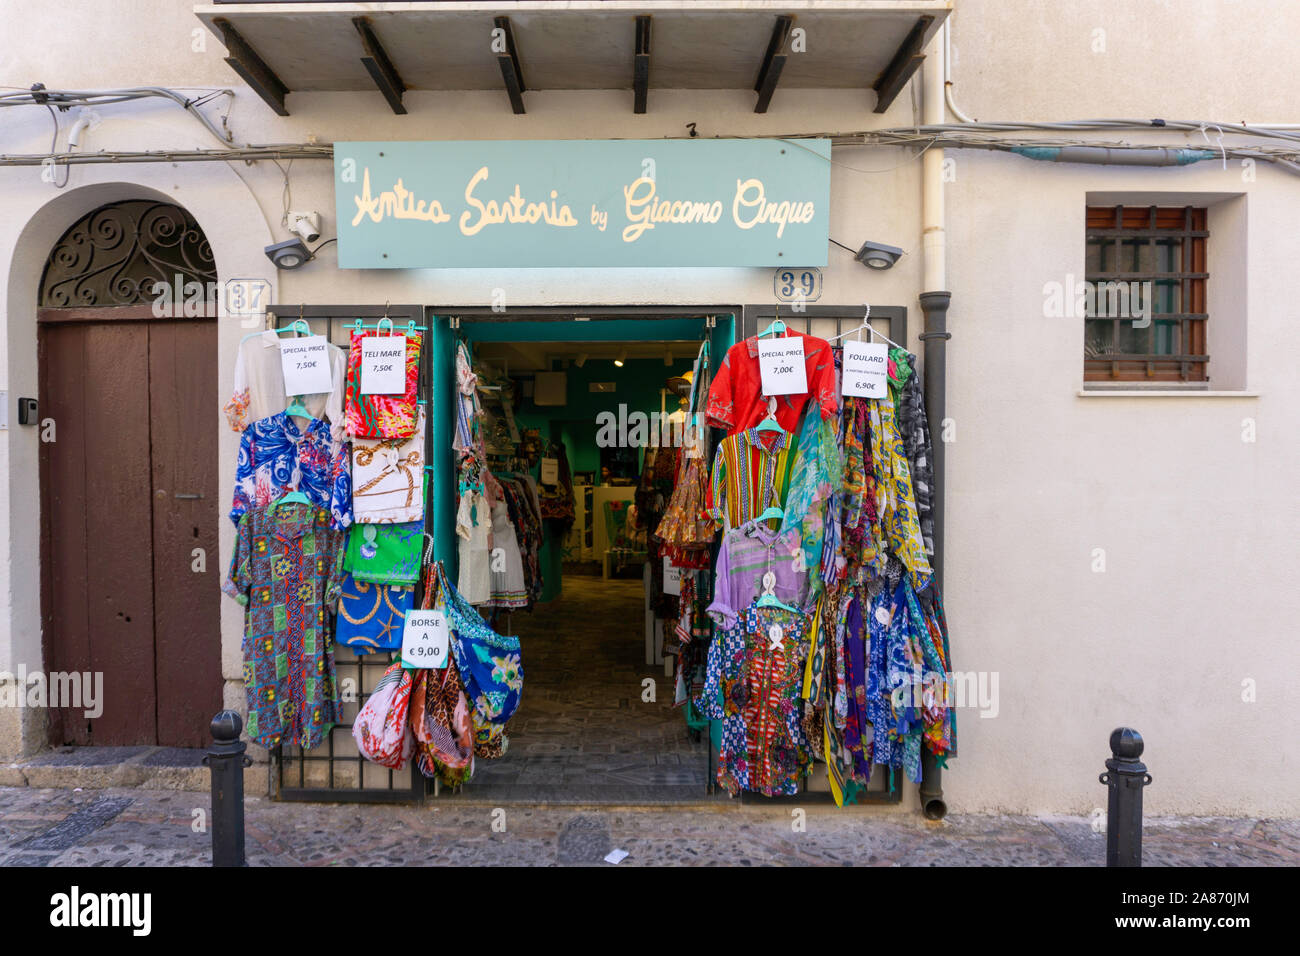 Eine Filiale der Antica Sartoria von Giacomo Cinque, ein Bekleidungsgeschäft in Cefalu, Eines der vielen attraktiven Geschäften unter den Seitenstraßen von cefalú. Stockfoto